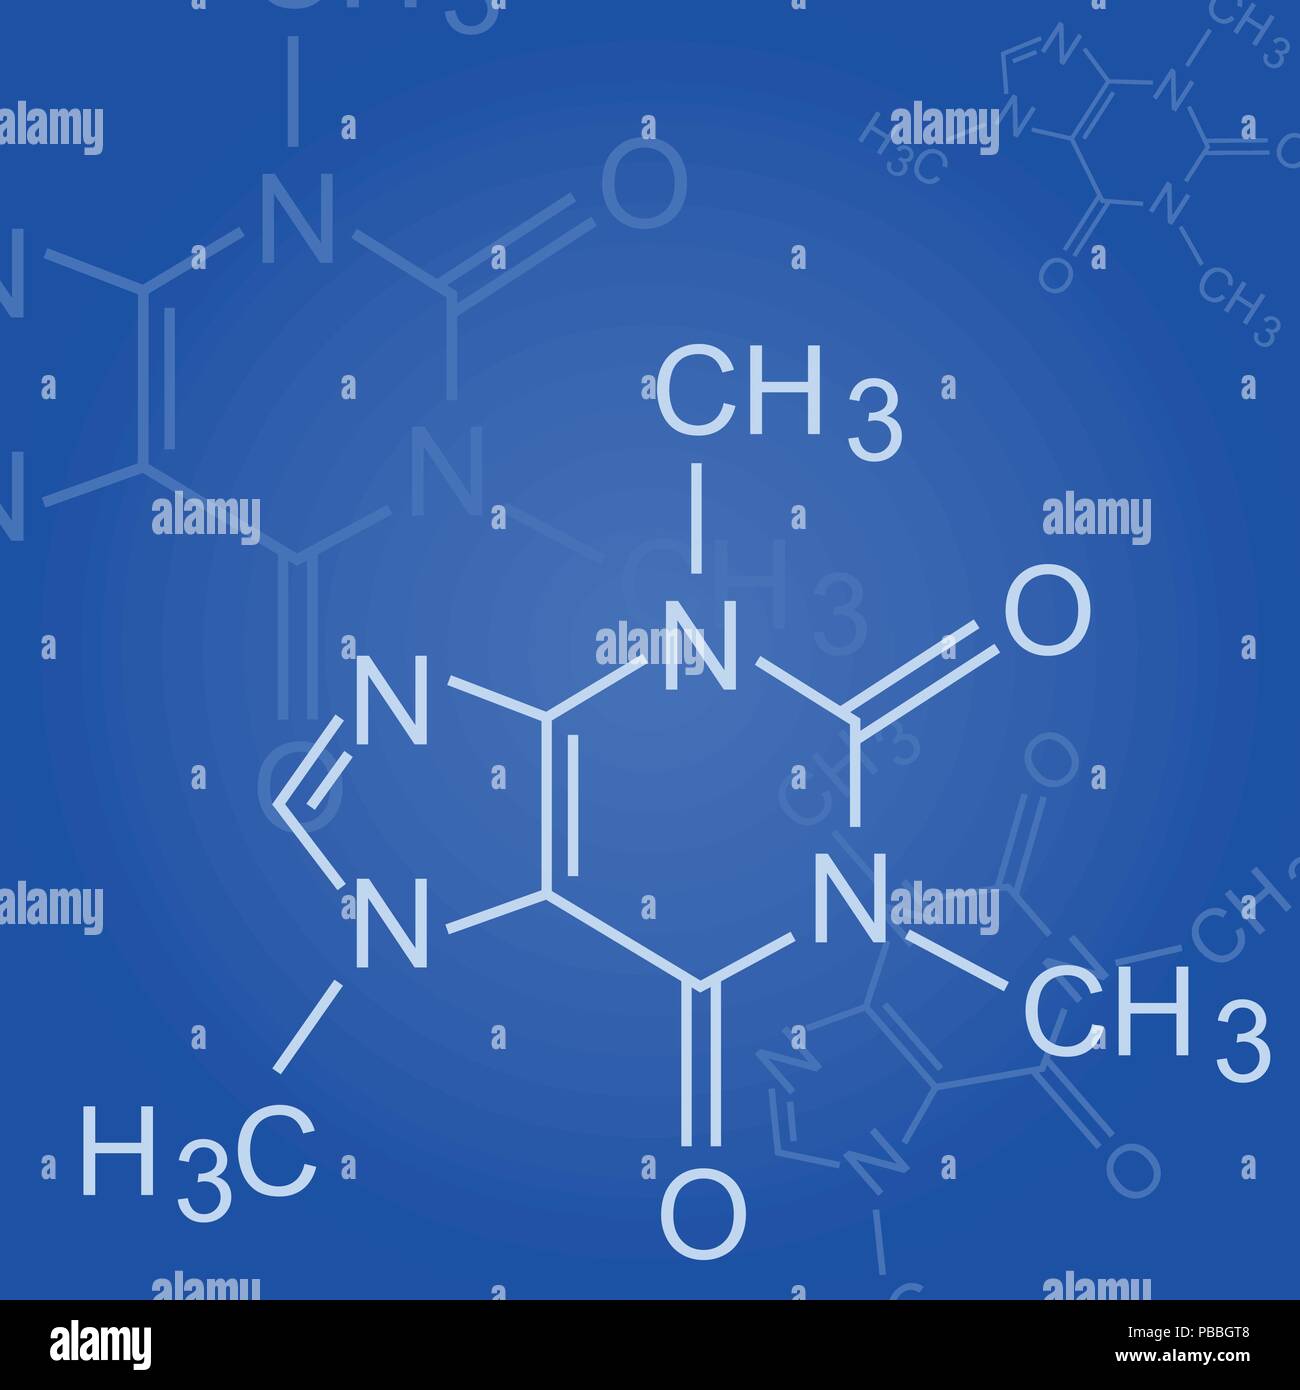 Chemische Formel auf blauem Hintergrund - Formel für organische Chemie Stock Vektor